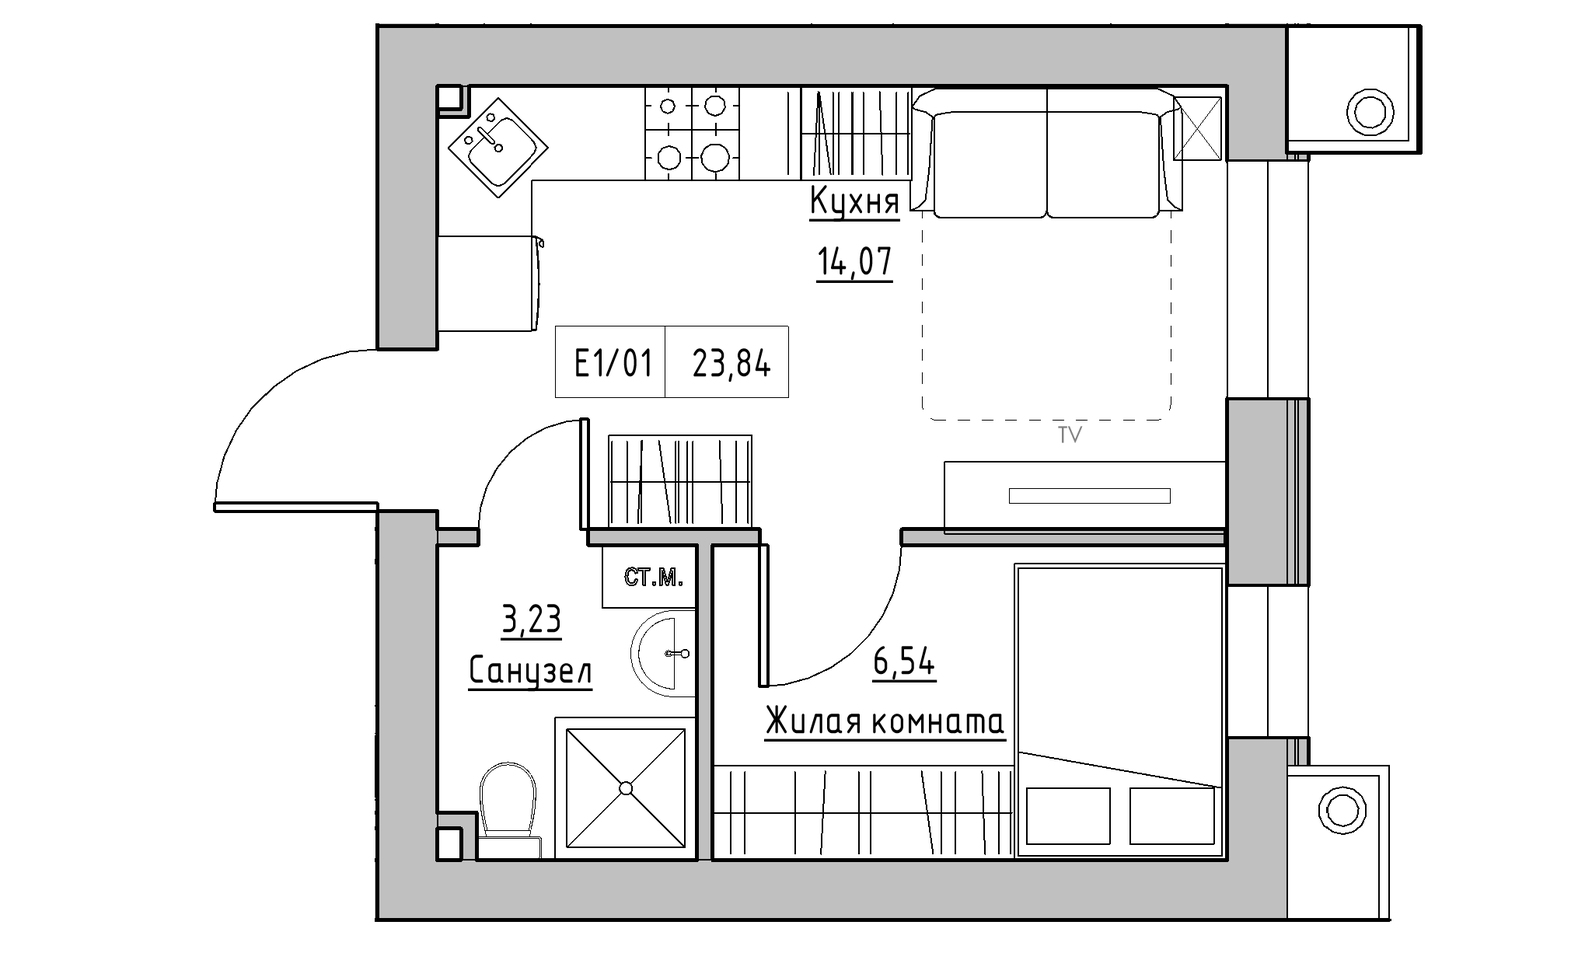 Планування 1-к квартира площею 23.84м2, KS-014-01/0011.